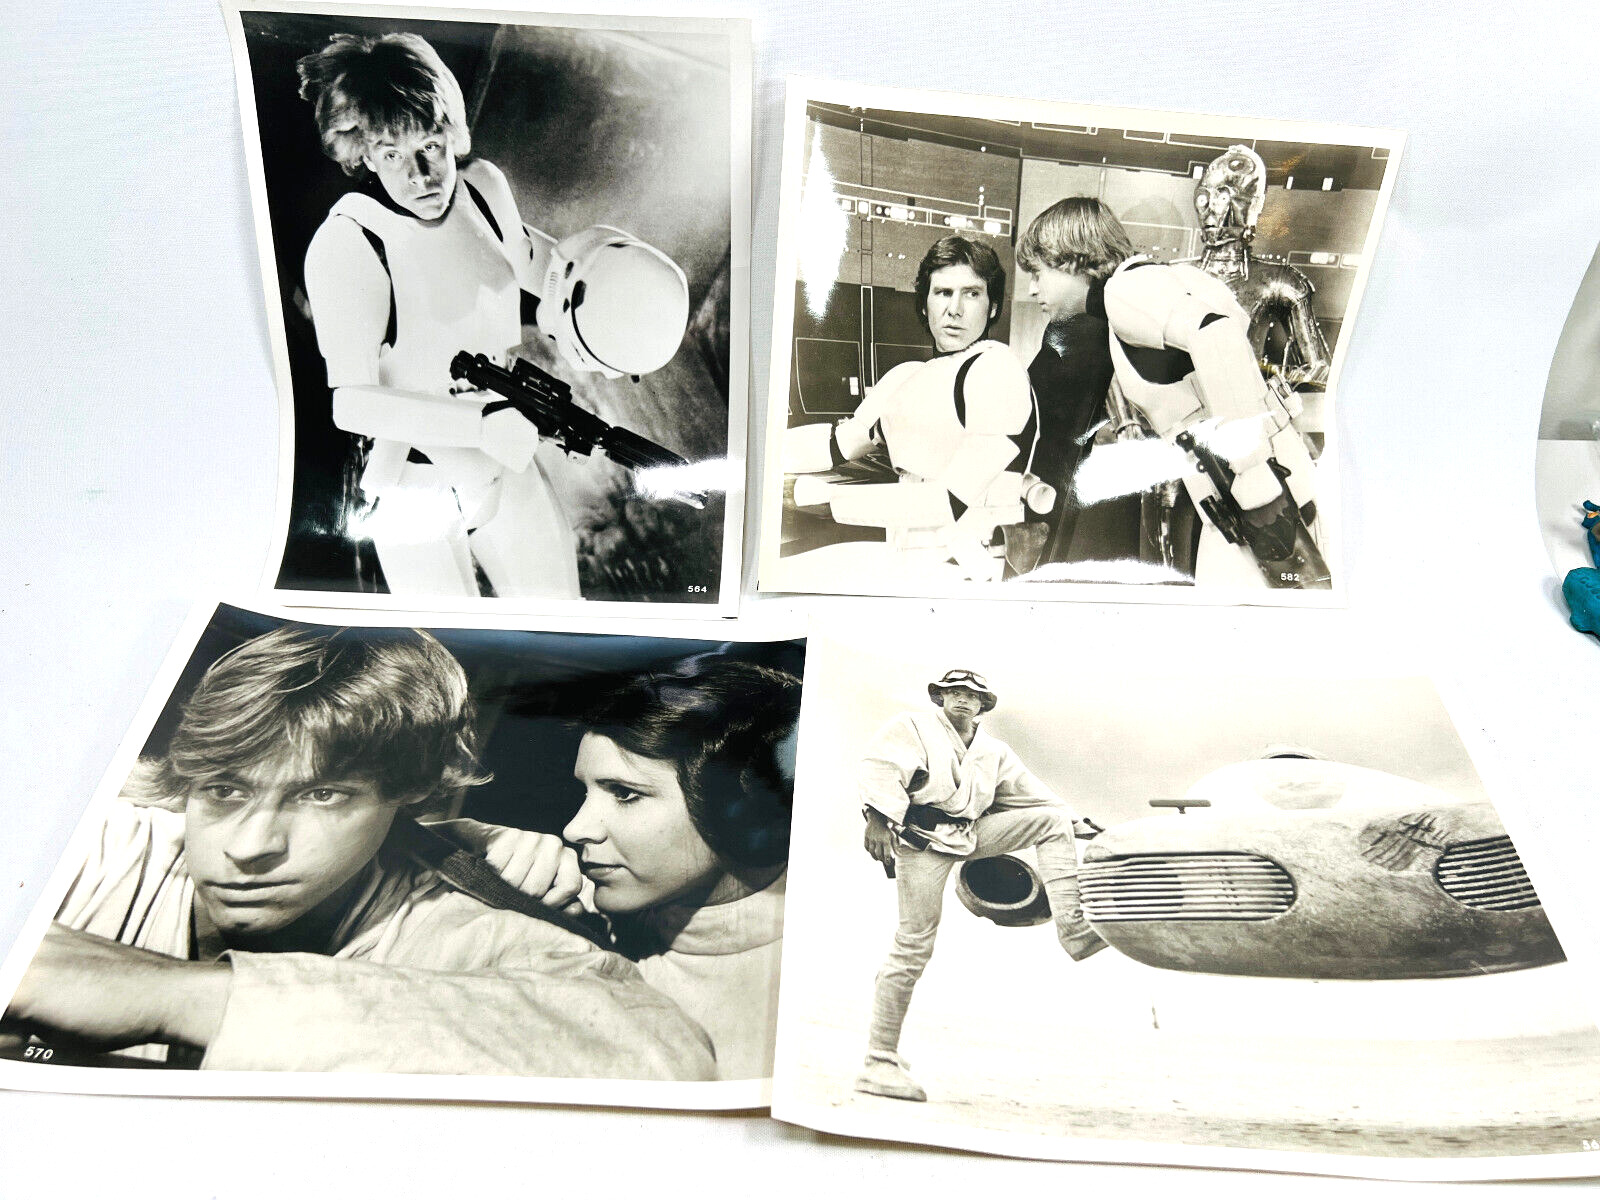 vtg 1977 Lot (4) Original Star Wars Press Photo Stills Luke Skywalker Han Solo